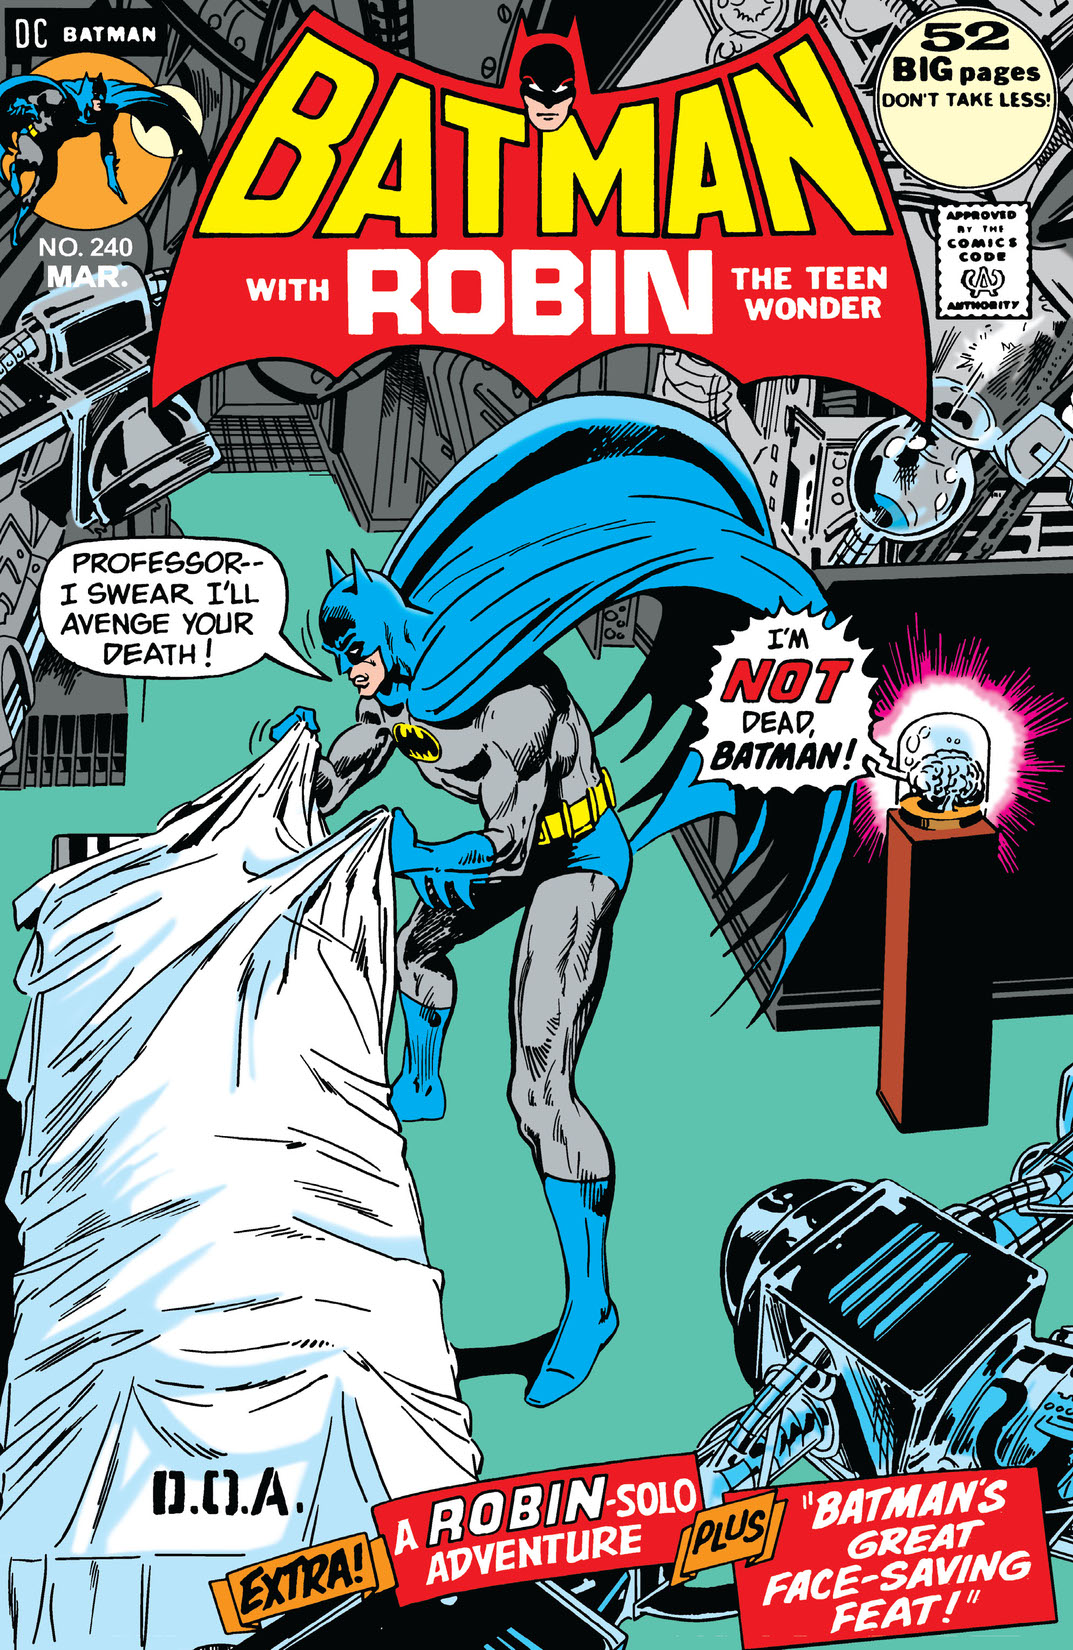 Batman (1940-) #240 preview images